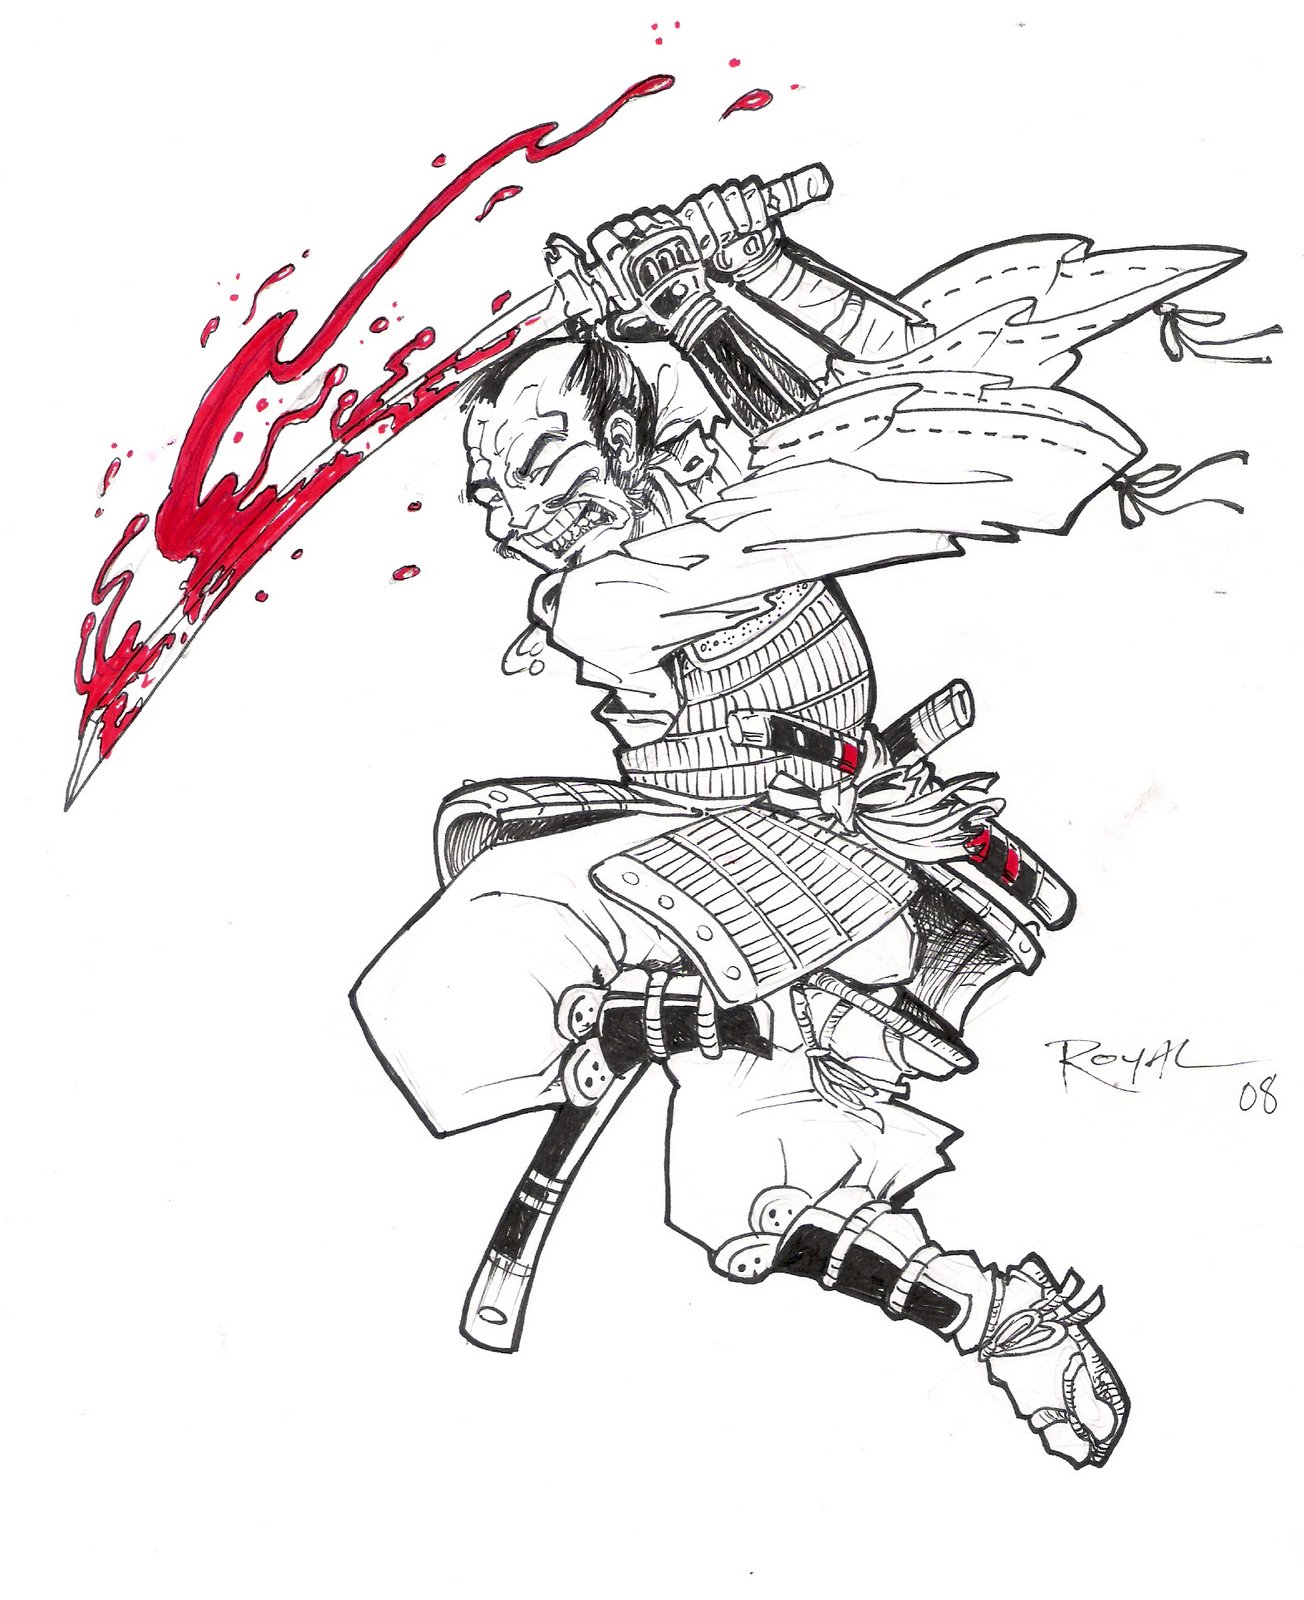 [Eric+Royal+Samurai+drawing+pen+and+ink+01.jpg]